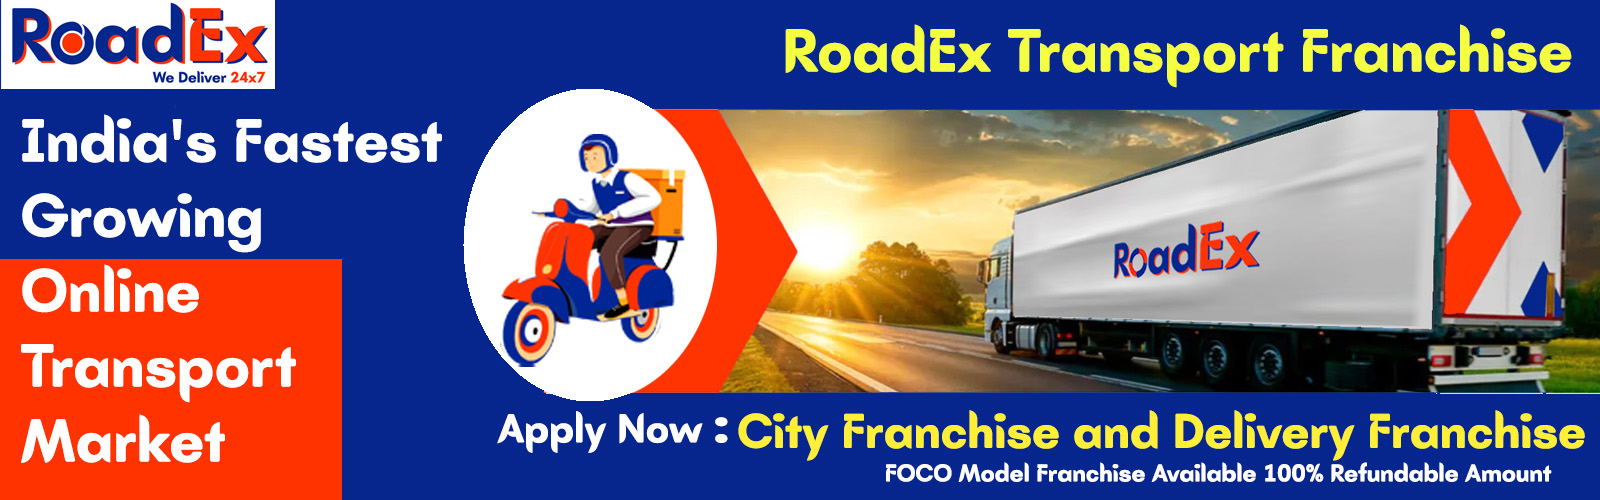 admin/uploads/brand_registration/Roadex Transport - India's Fastest Growing Online Transport Market Franchise